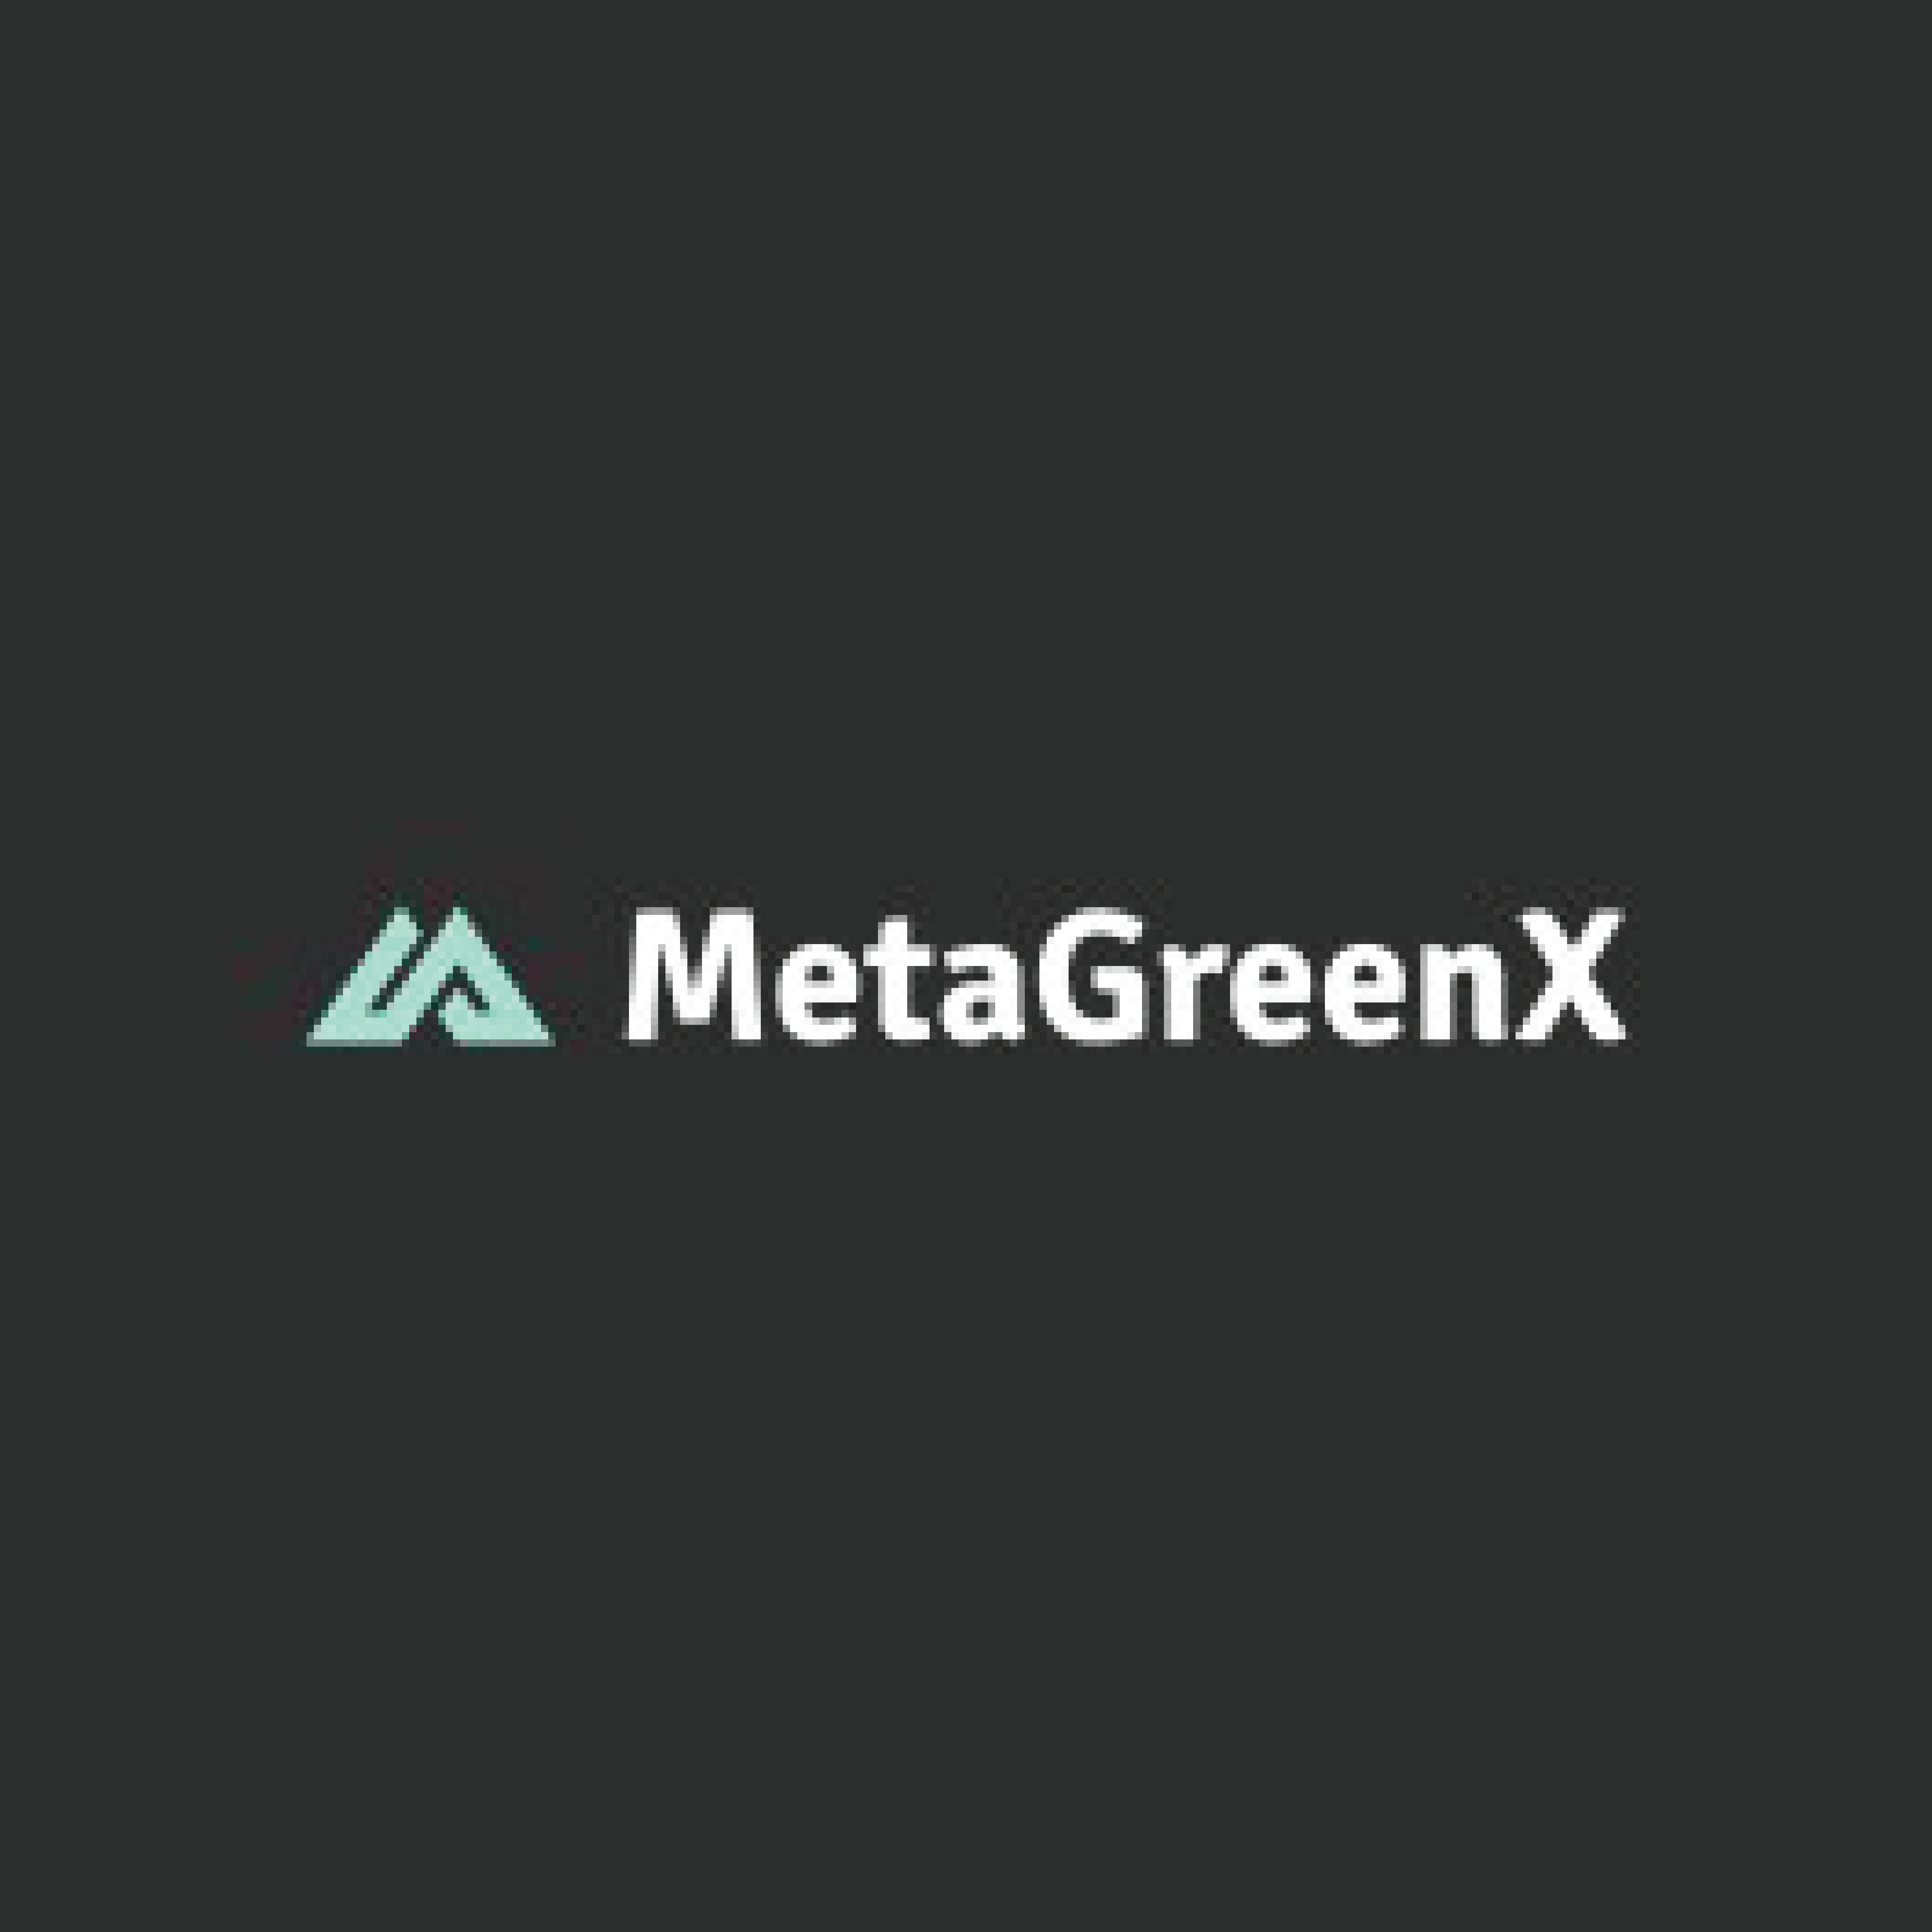 MetaGreenX